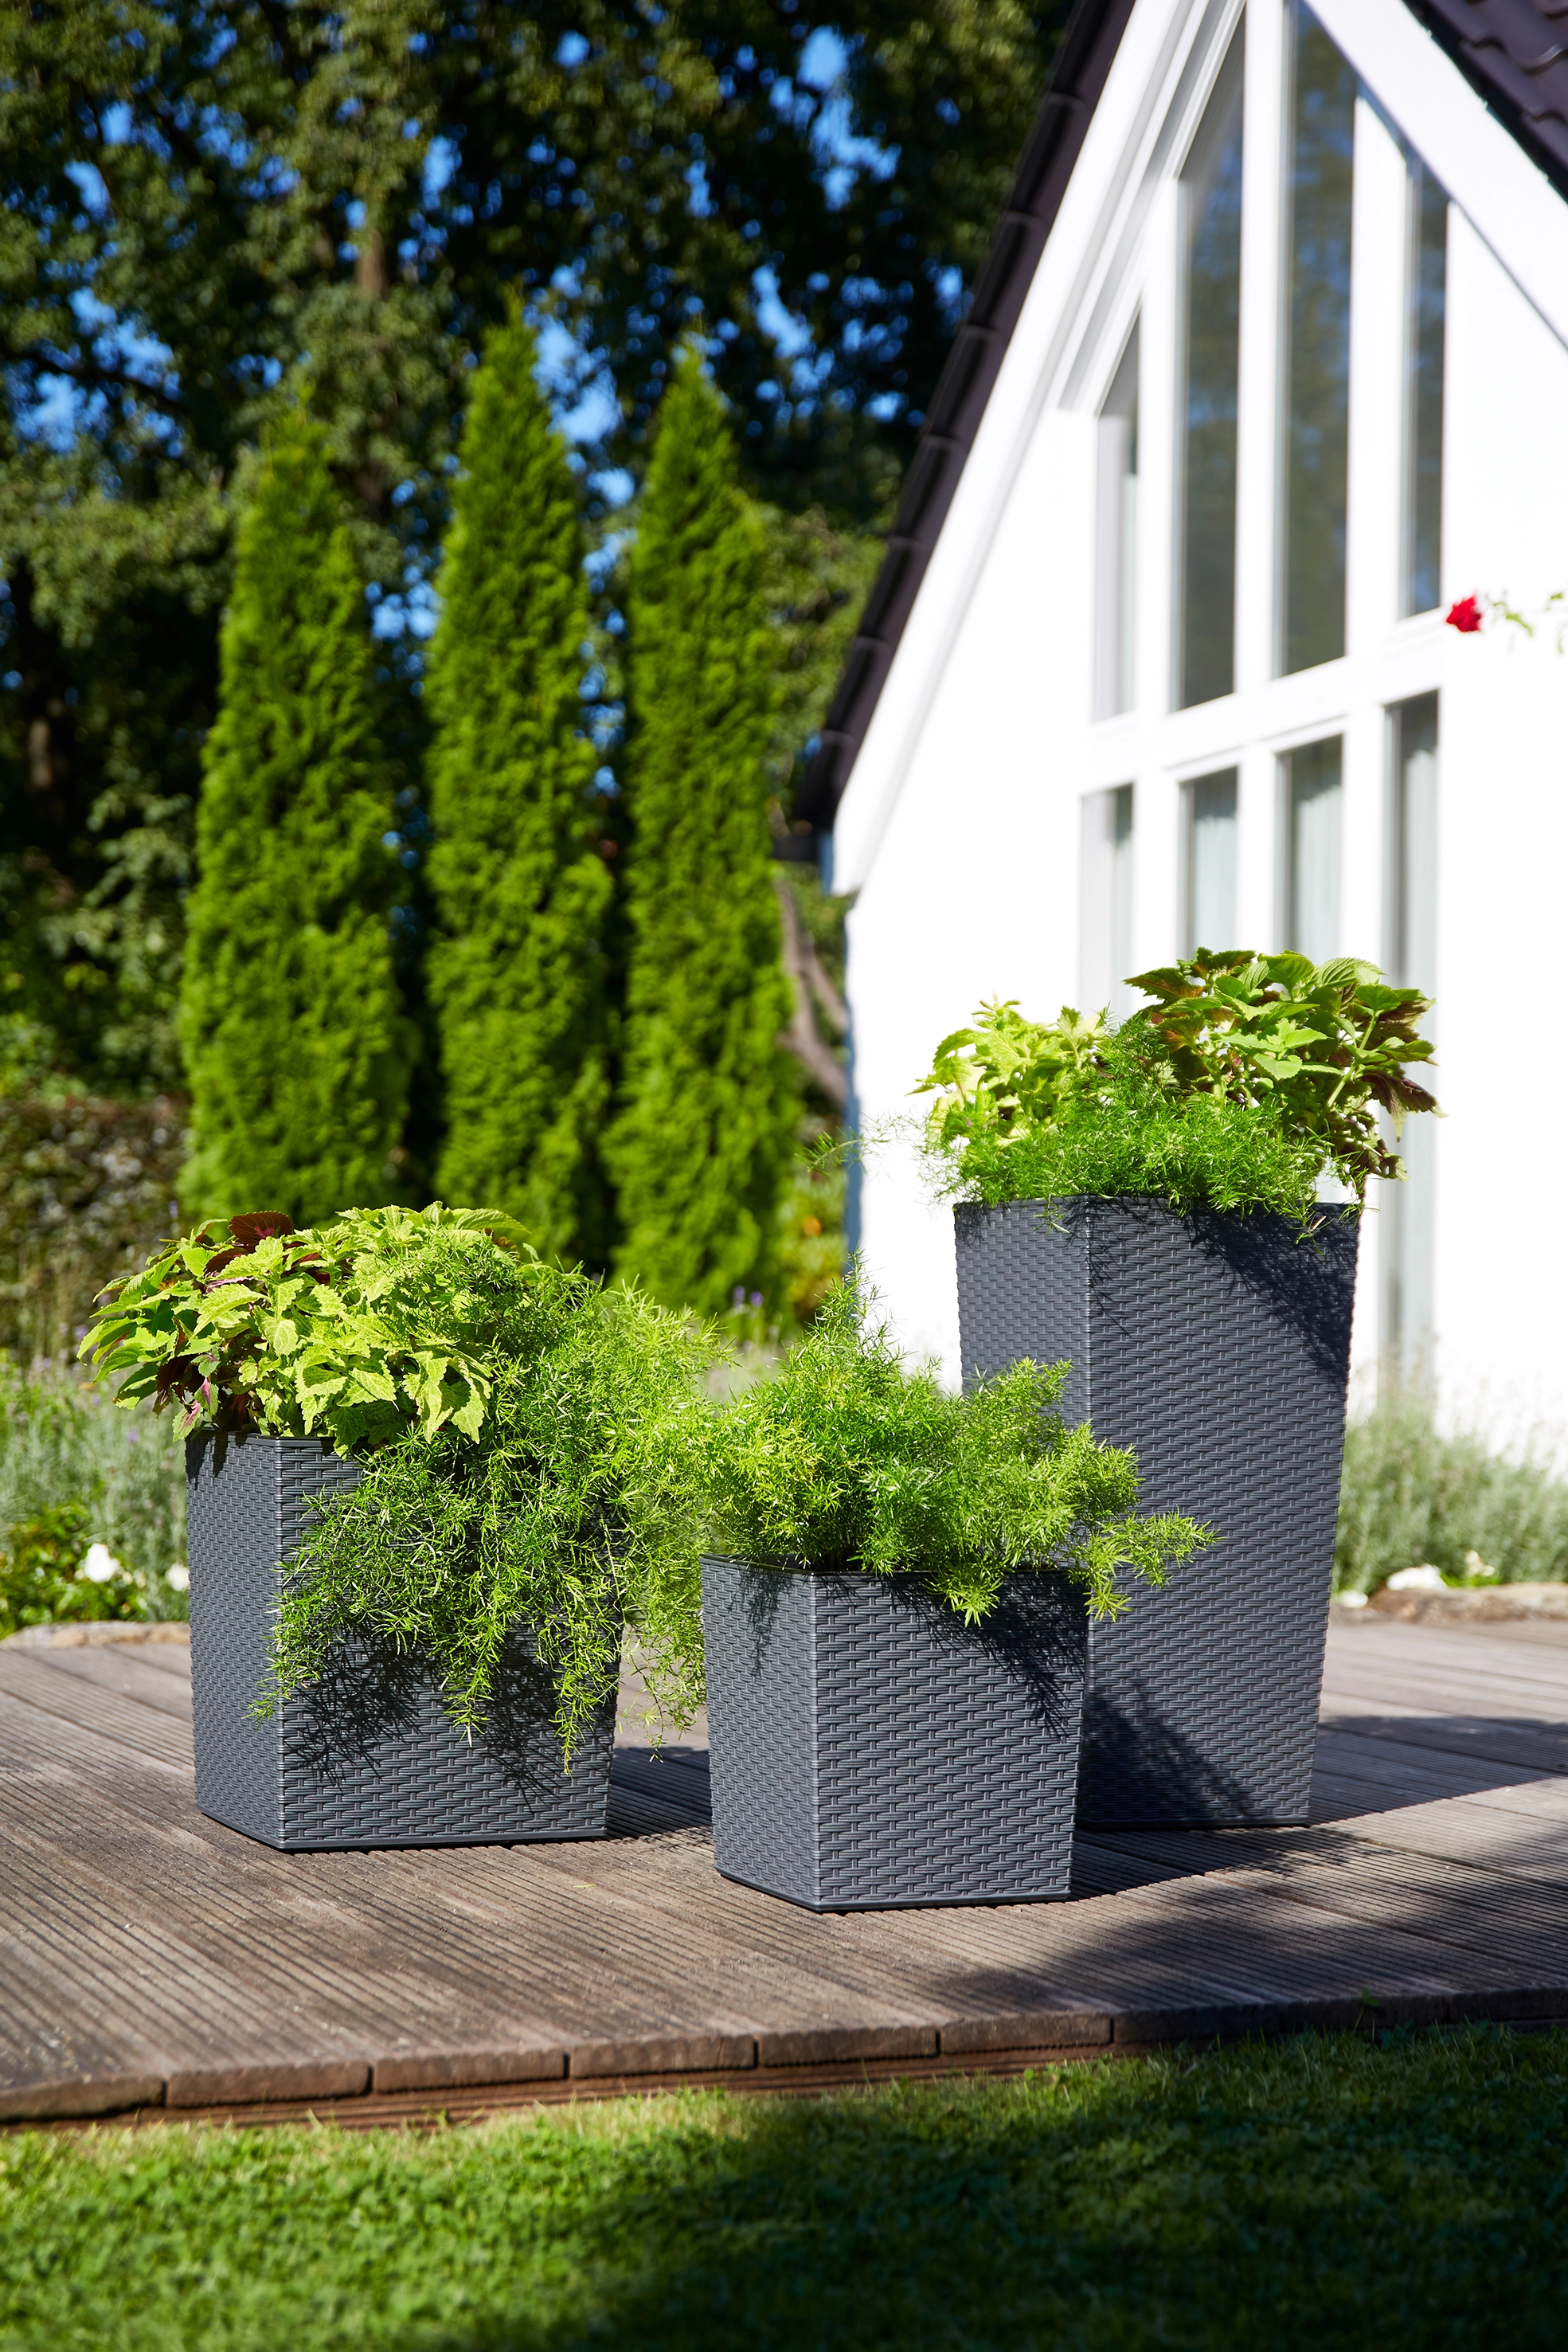 Siena Garden Pflanzgefäß Modern Marle Graphit 25x25x26,0 cm kaufen bei OBI | Pflanzkübel